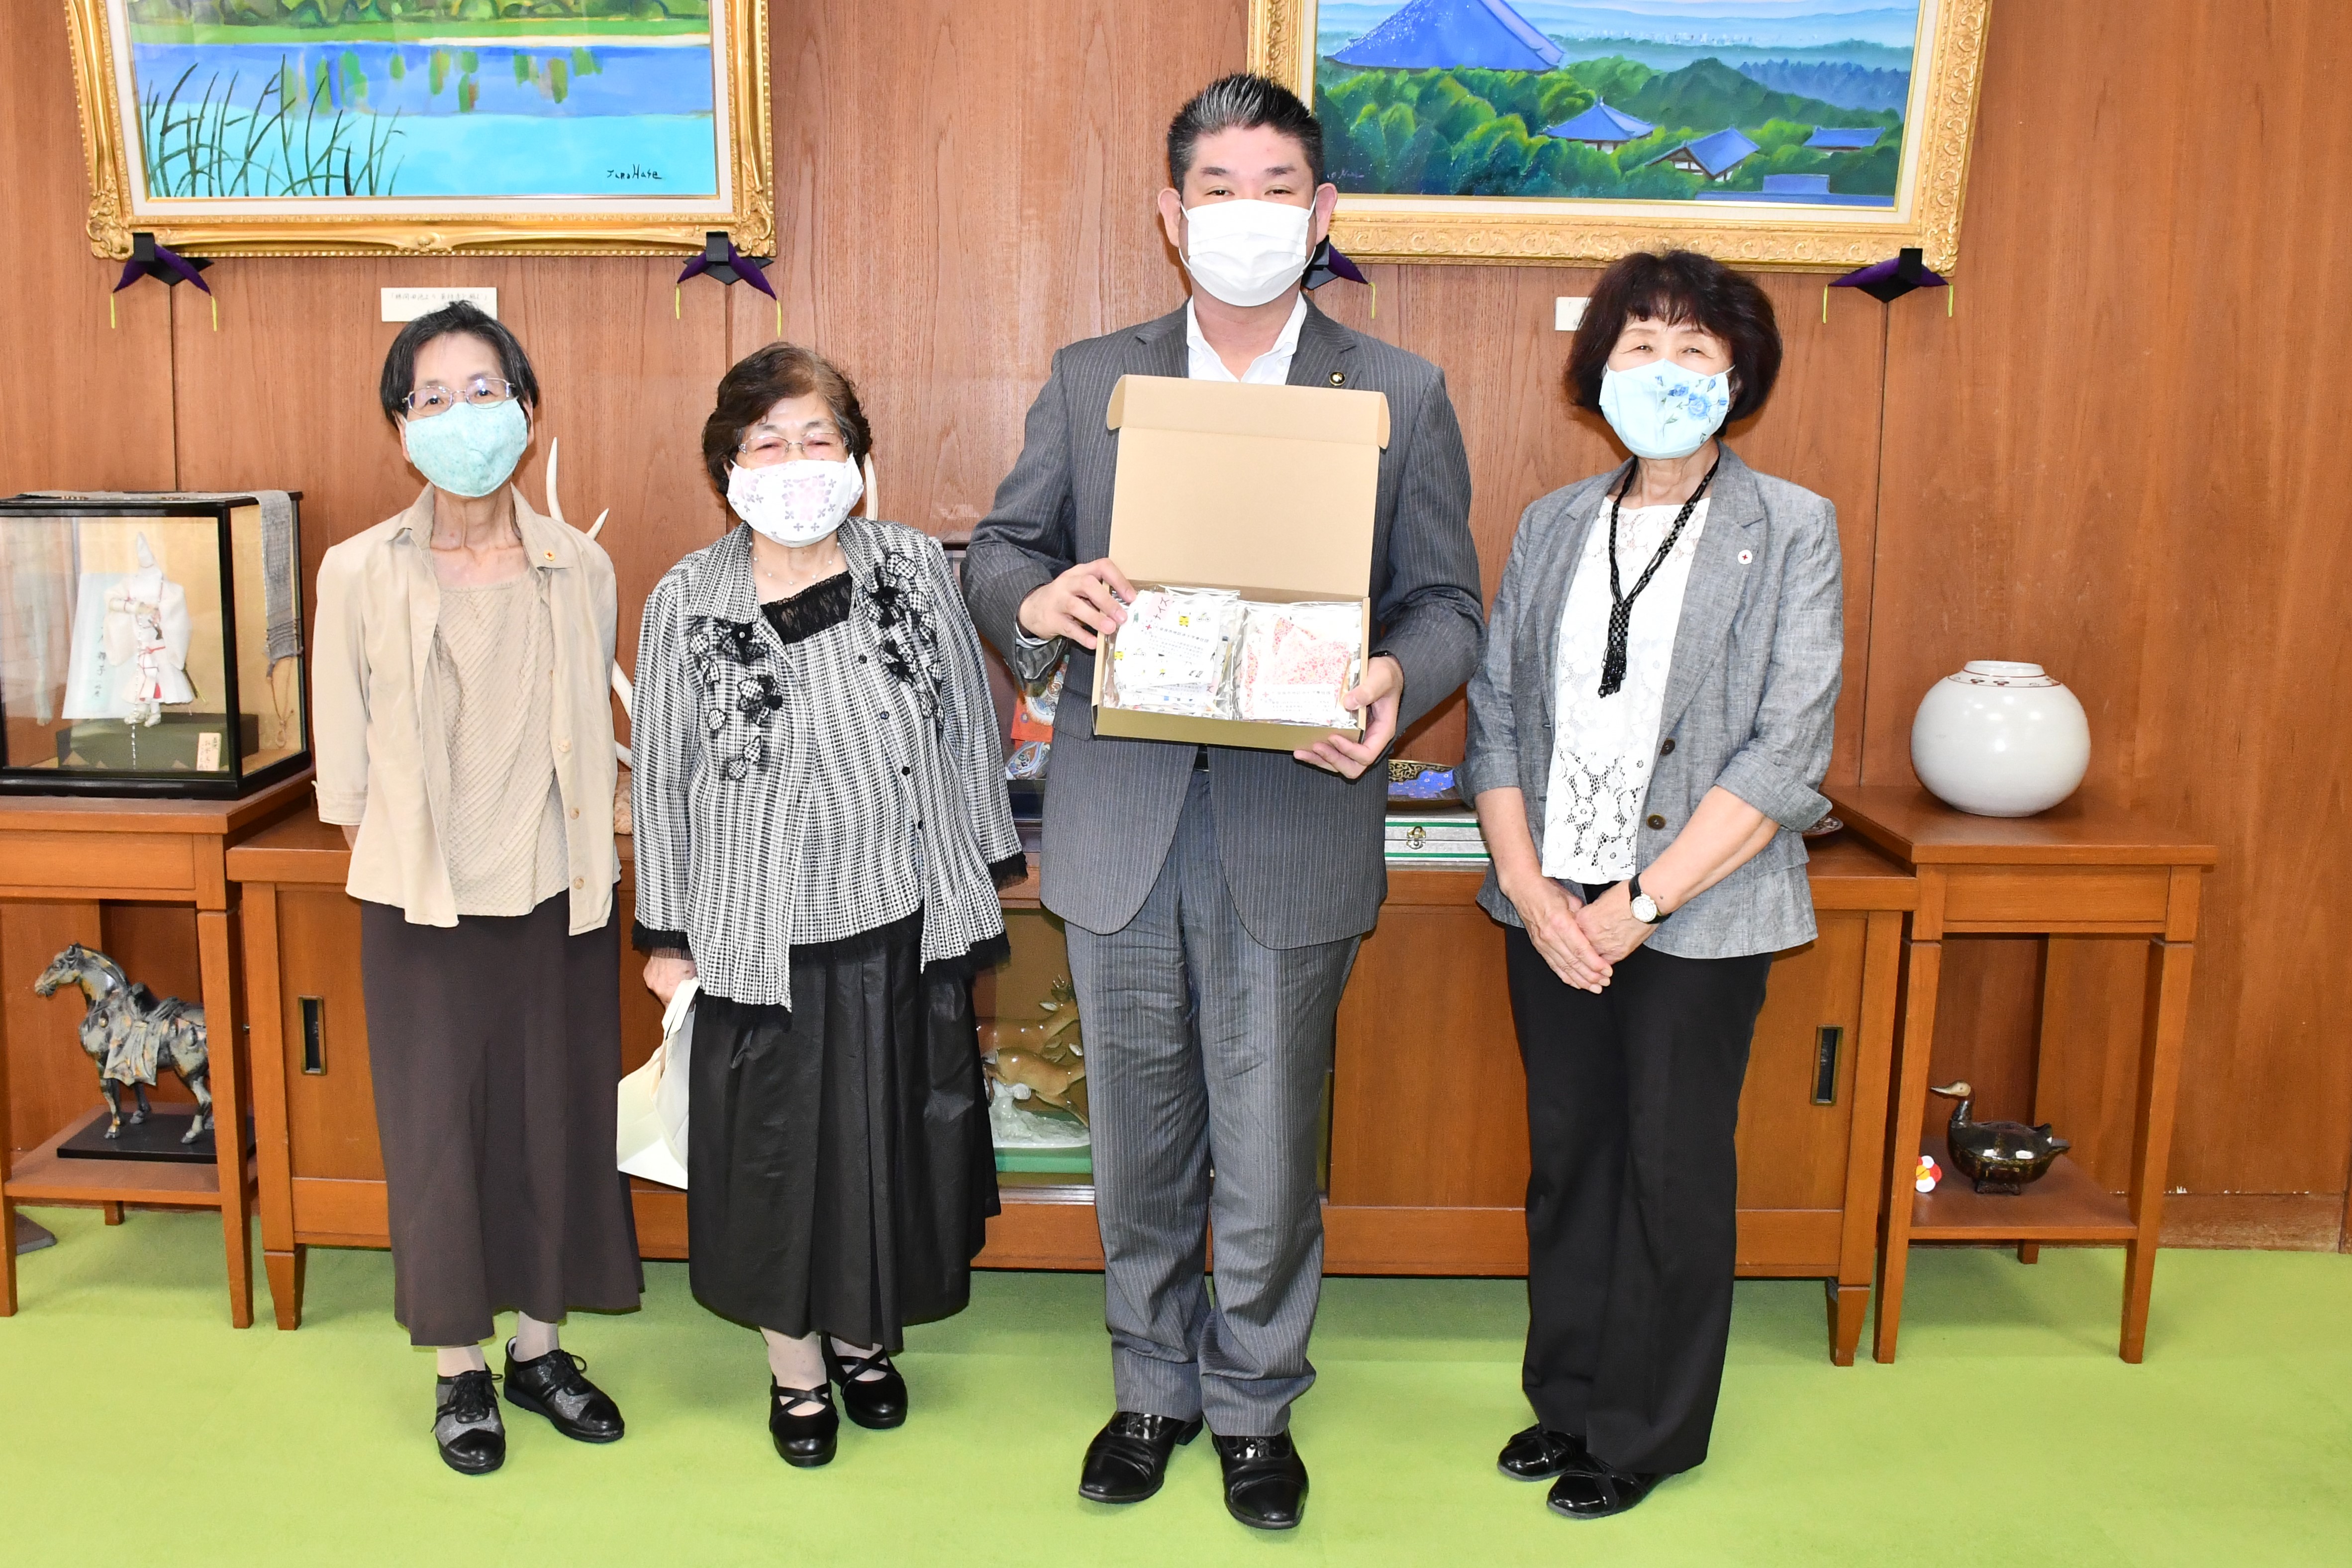 奈良市地区赤十字奉仕団様からの「手作りマスク」寄贈式